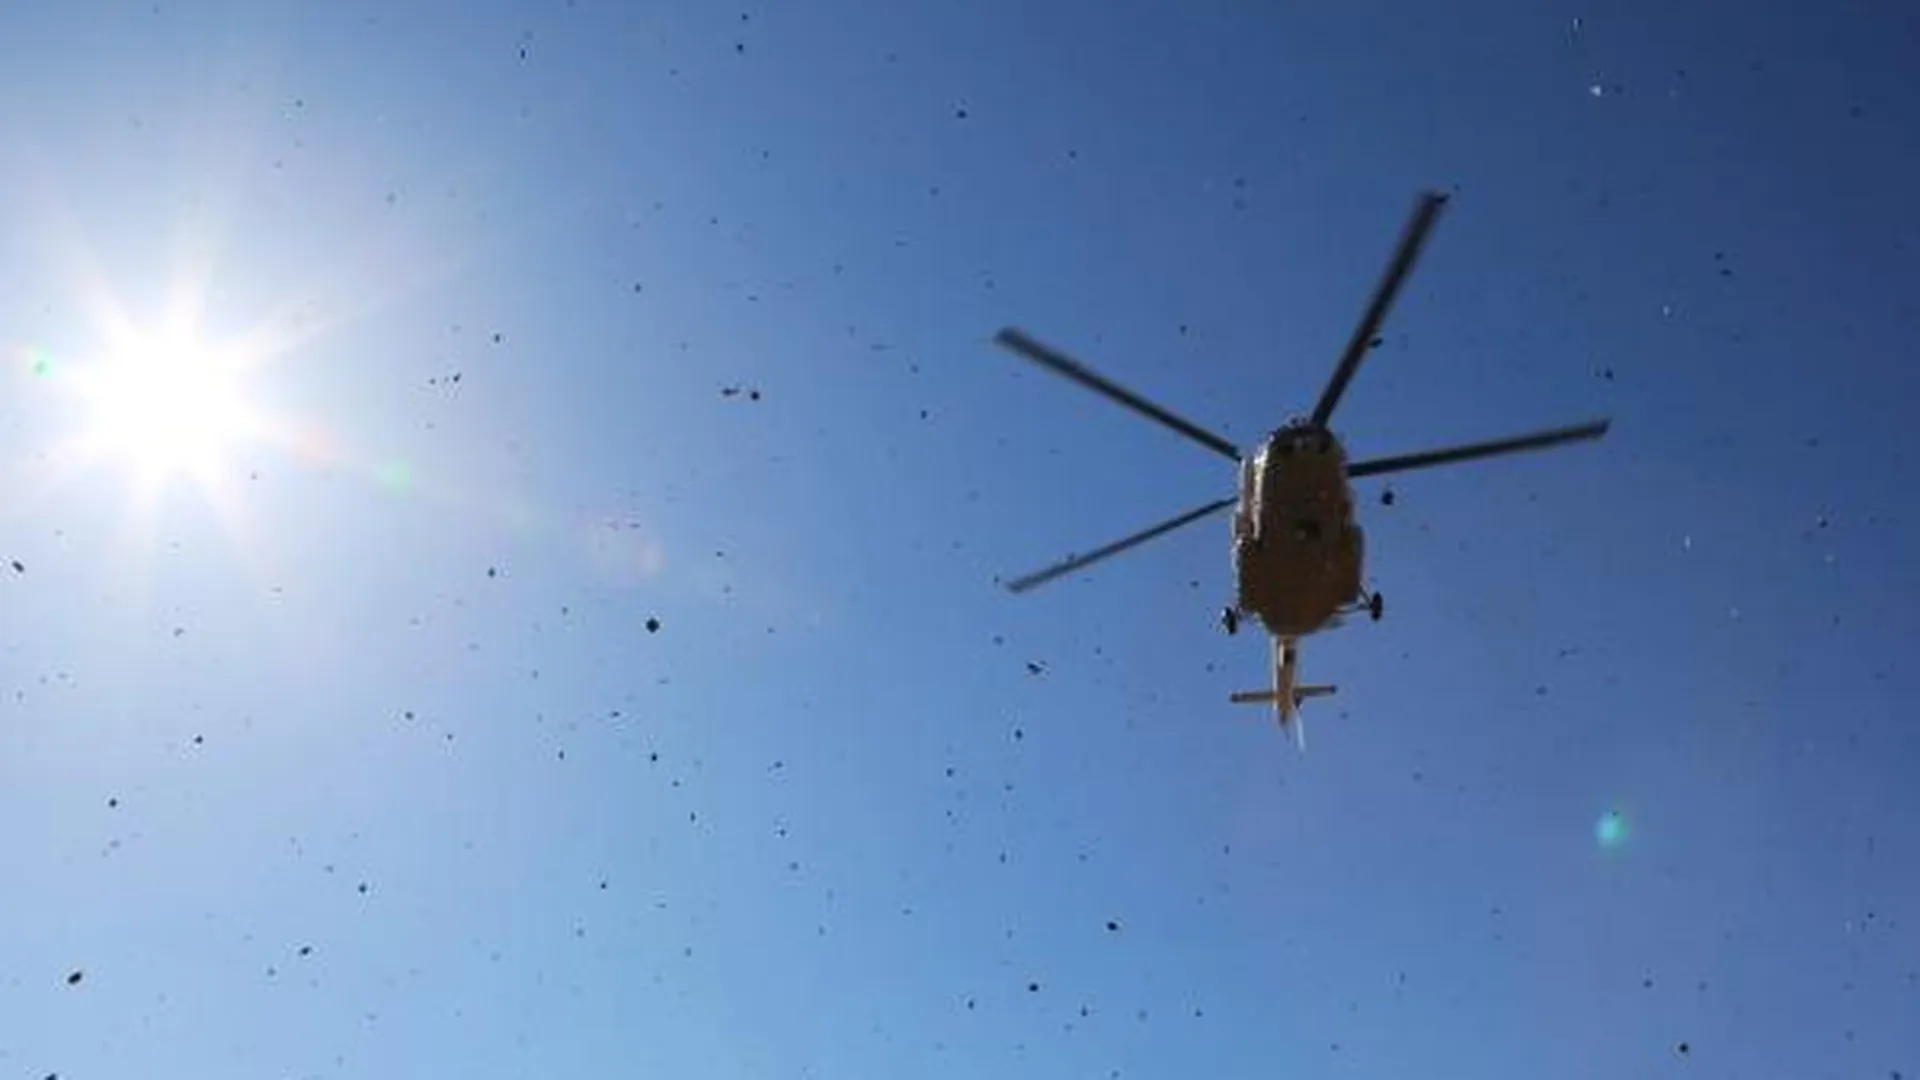 Хвост надломился у вертолета при жесткой посадке в Томской области - СМИ